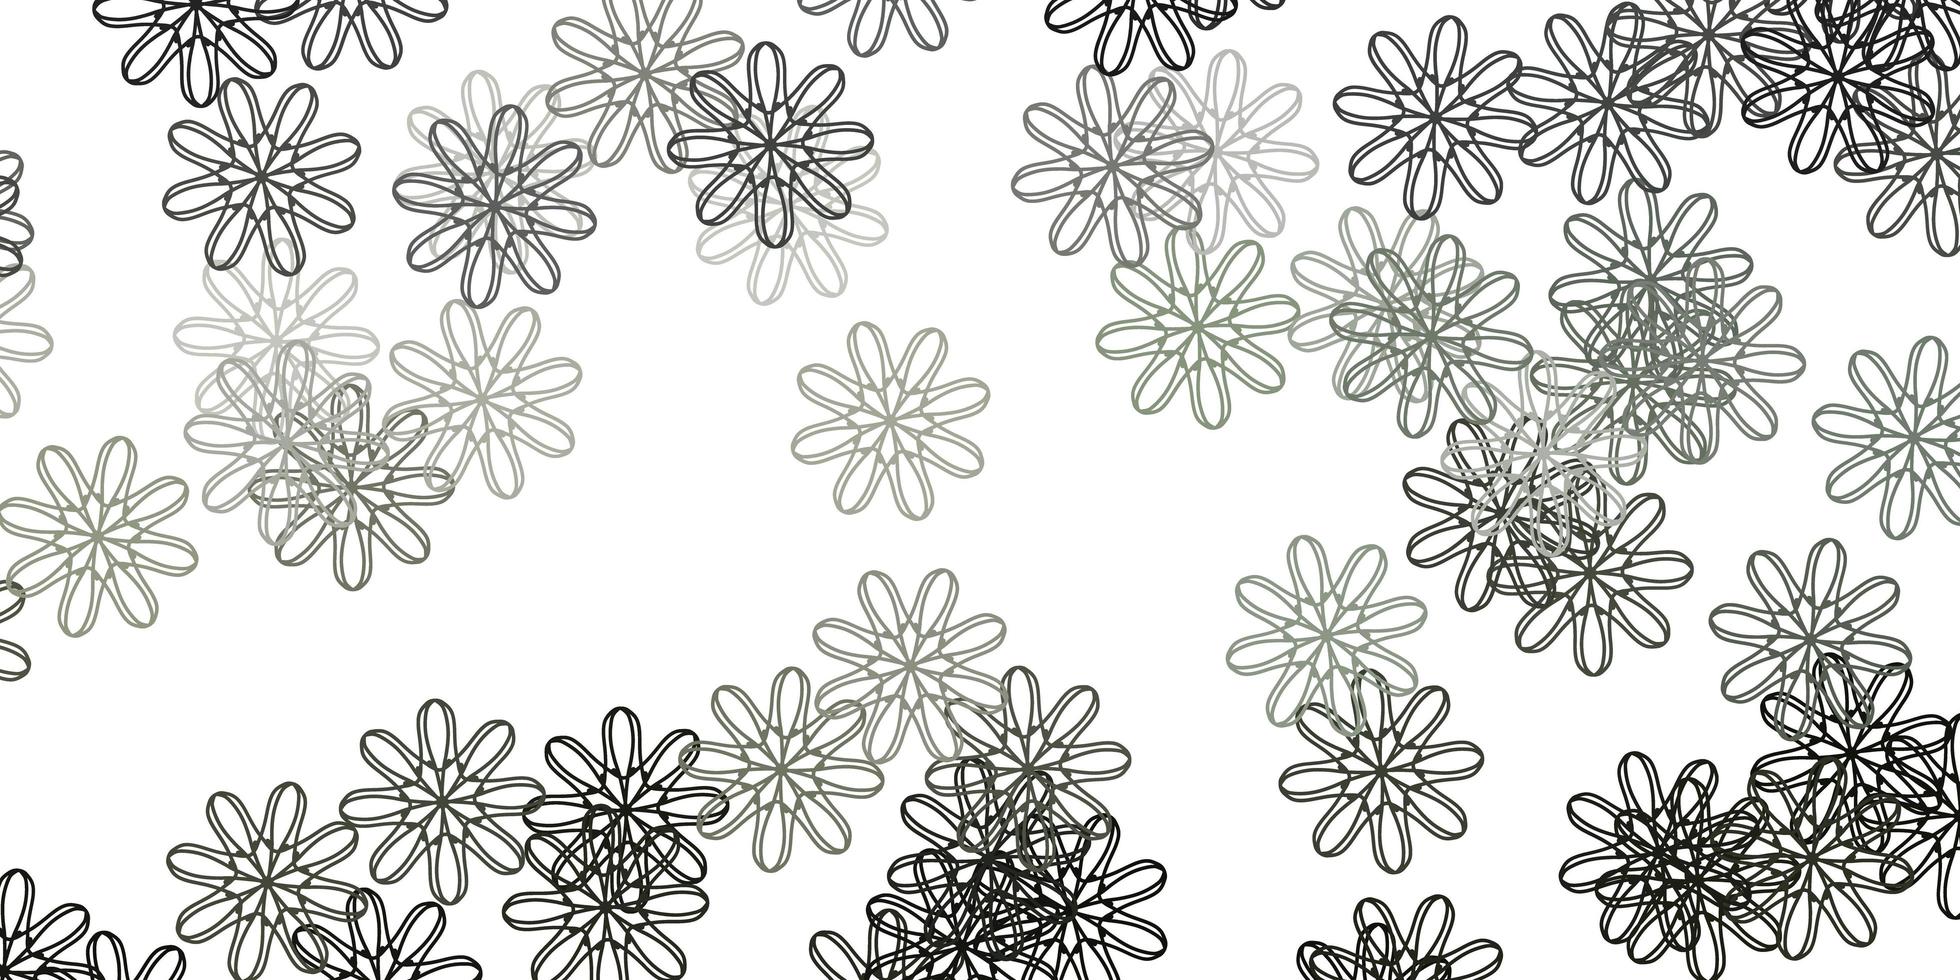 textura de doodle de vector gris claro con flores.